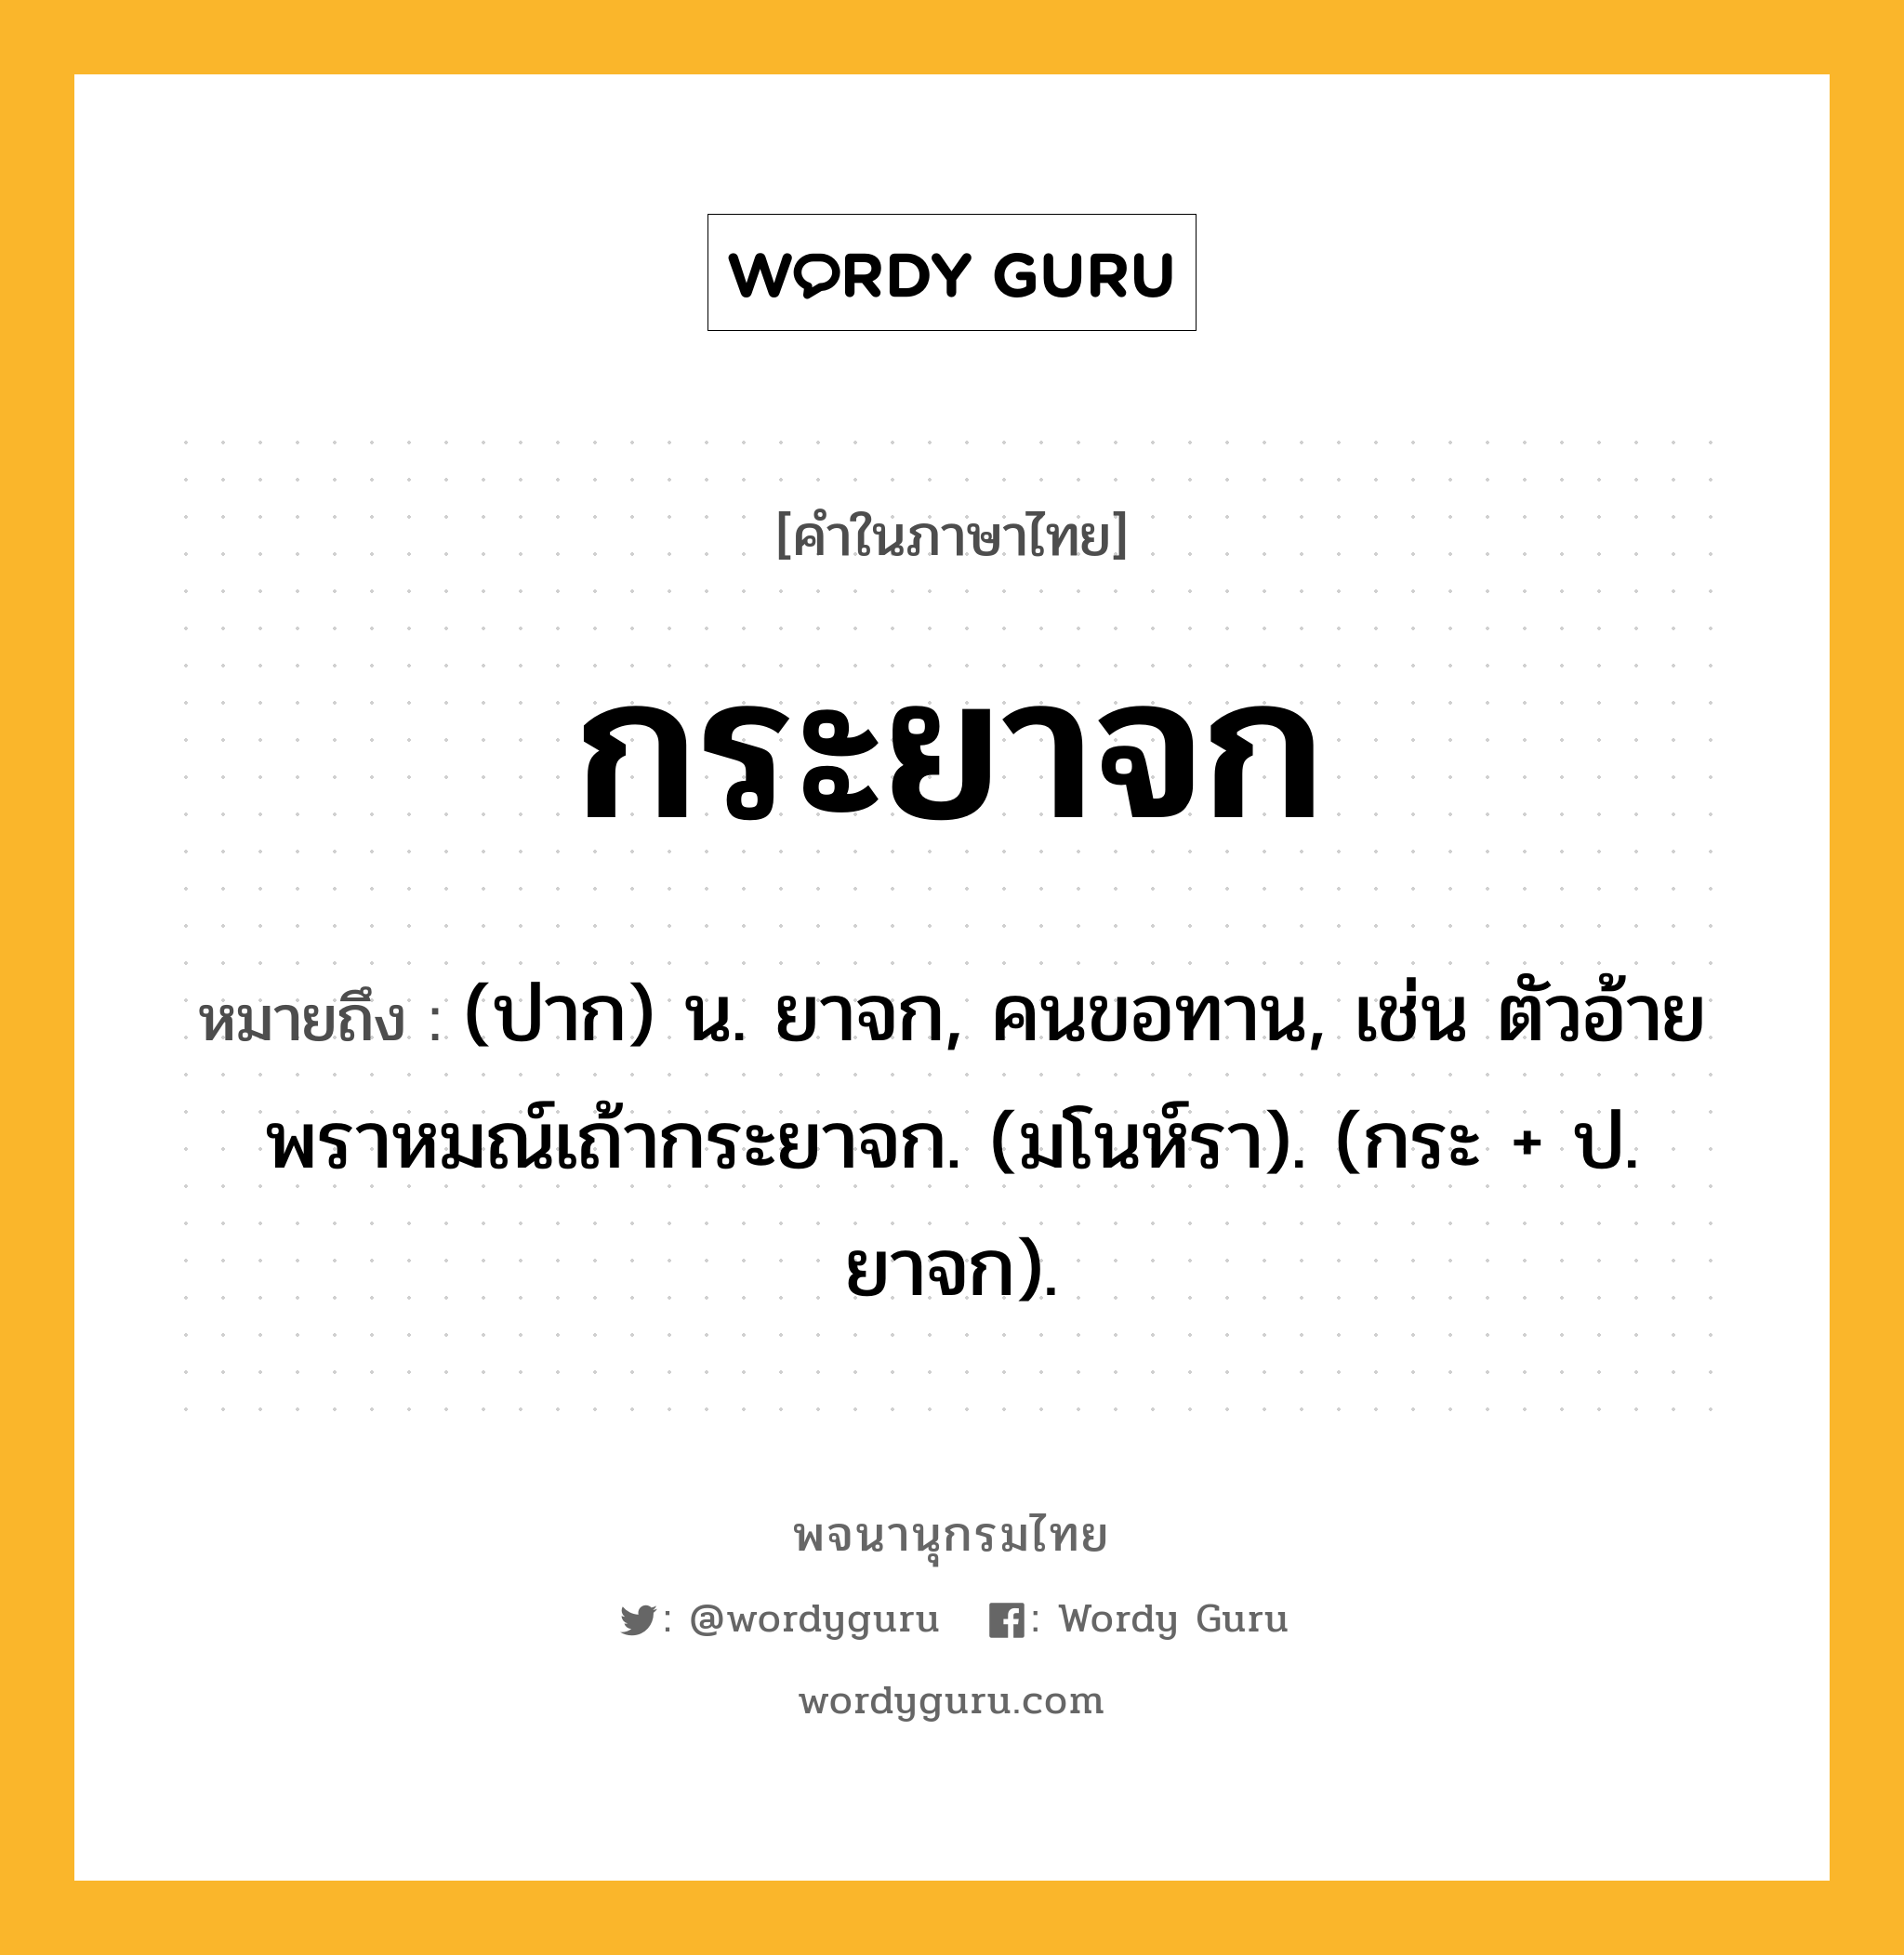 กระยาจก ความหมาย หมายถึงอะไร?, คำในภาษาไทย กระยาจก หมายถึง (ปาก) น. ยาจก, คนขอทาน, เช่น ตัวอ้ายพราหมณ์เถ้ากระยาจก. (มโนห์รา). (กระ + ป. ยาจก).